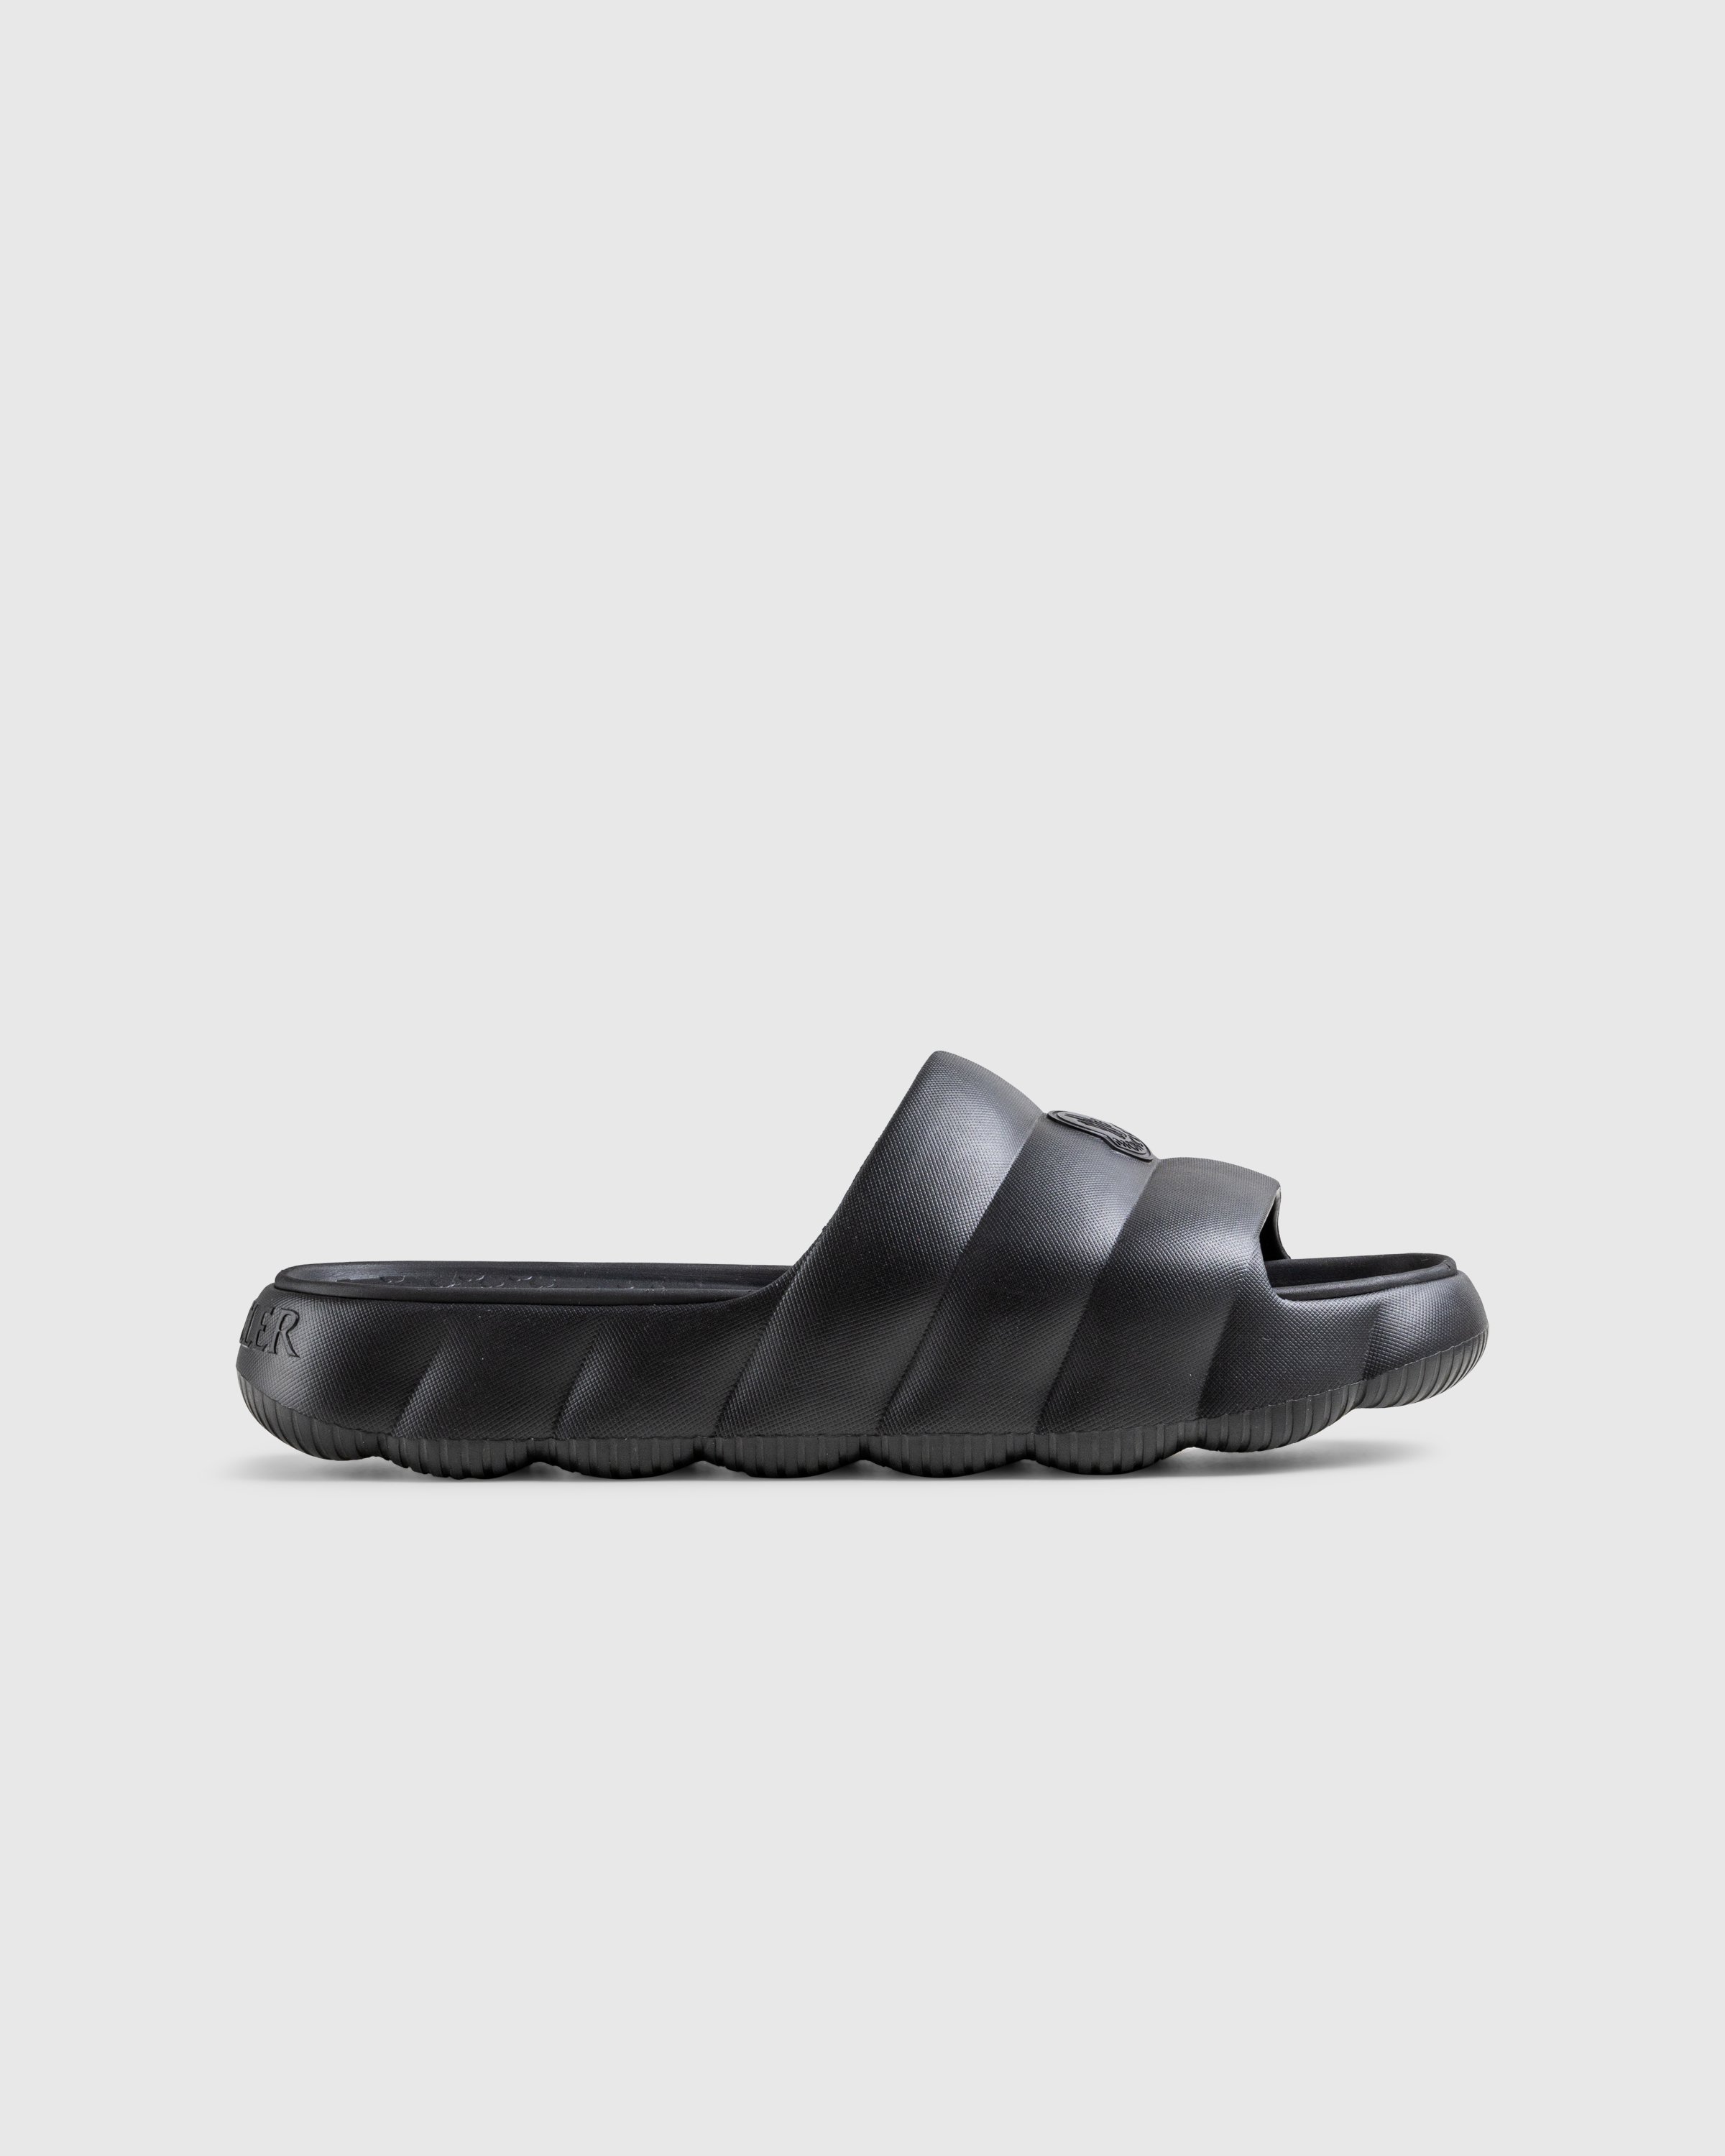 Moncler - LILO SLIDES BLACK - Footwear - Black - Image 1